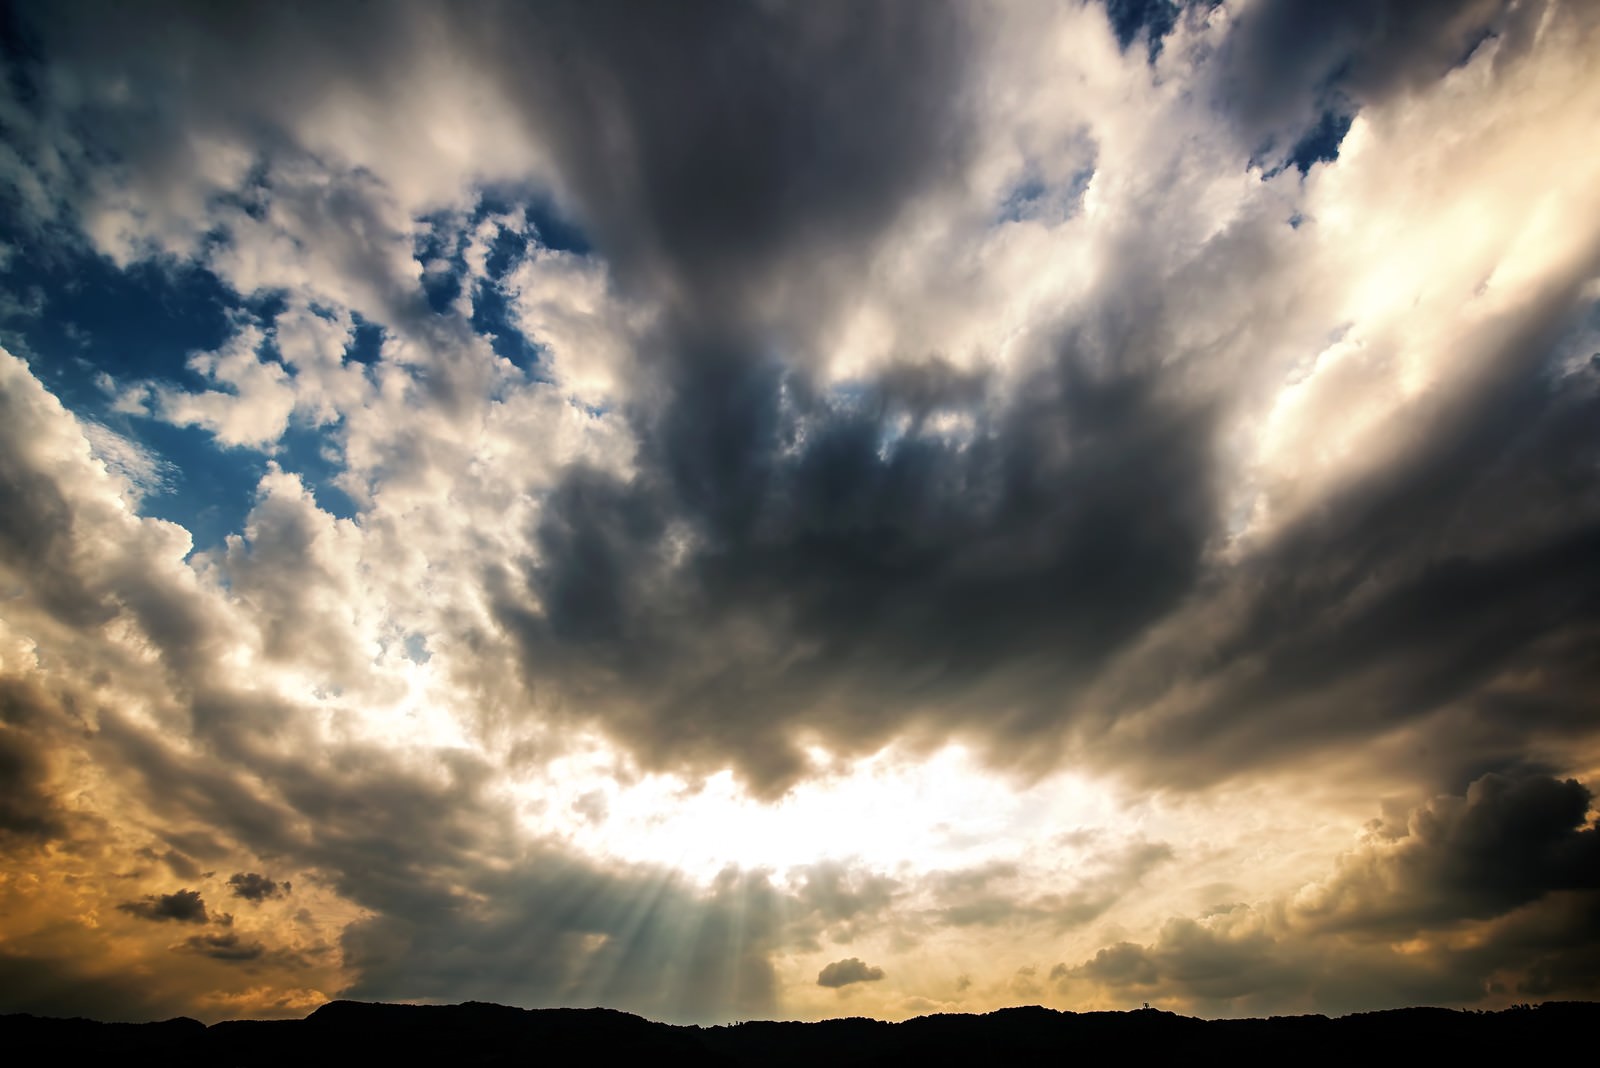 「神々しい雲と天使のはしご」の写真